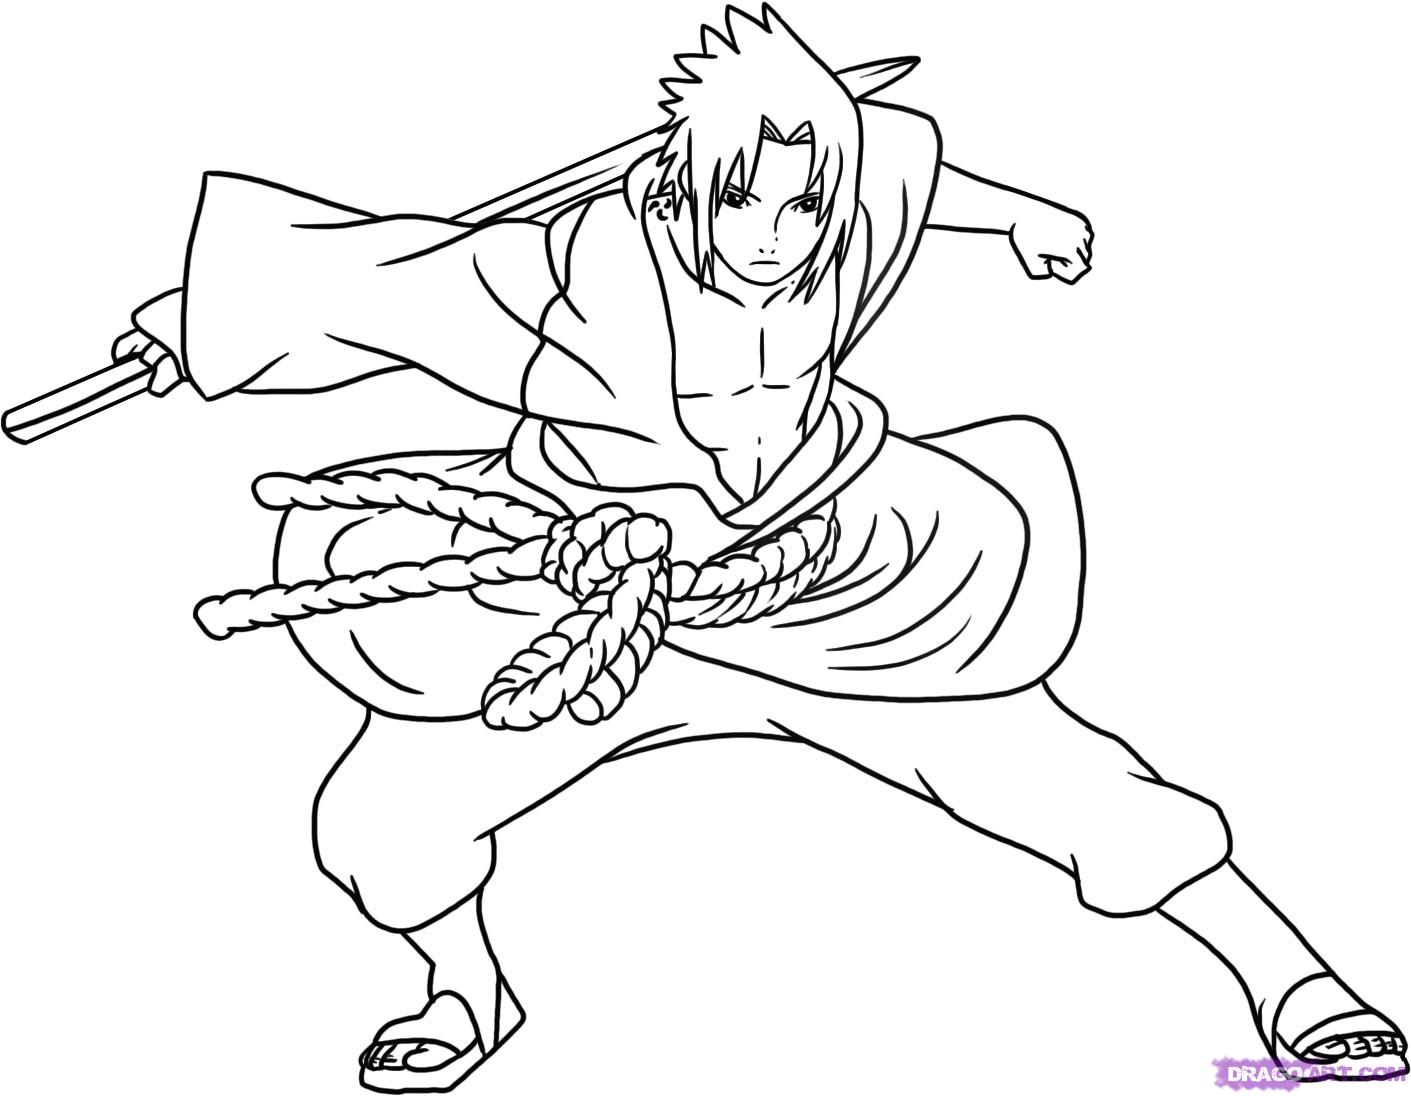 Meus Desenhos - Naruto/Sasuke Desenho feito a caneta, simples, sem